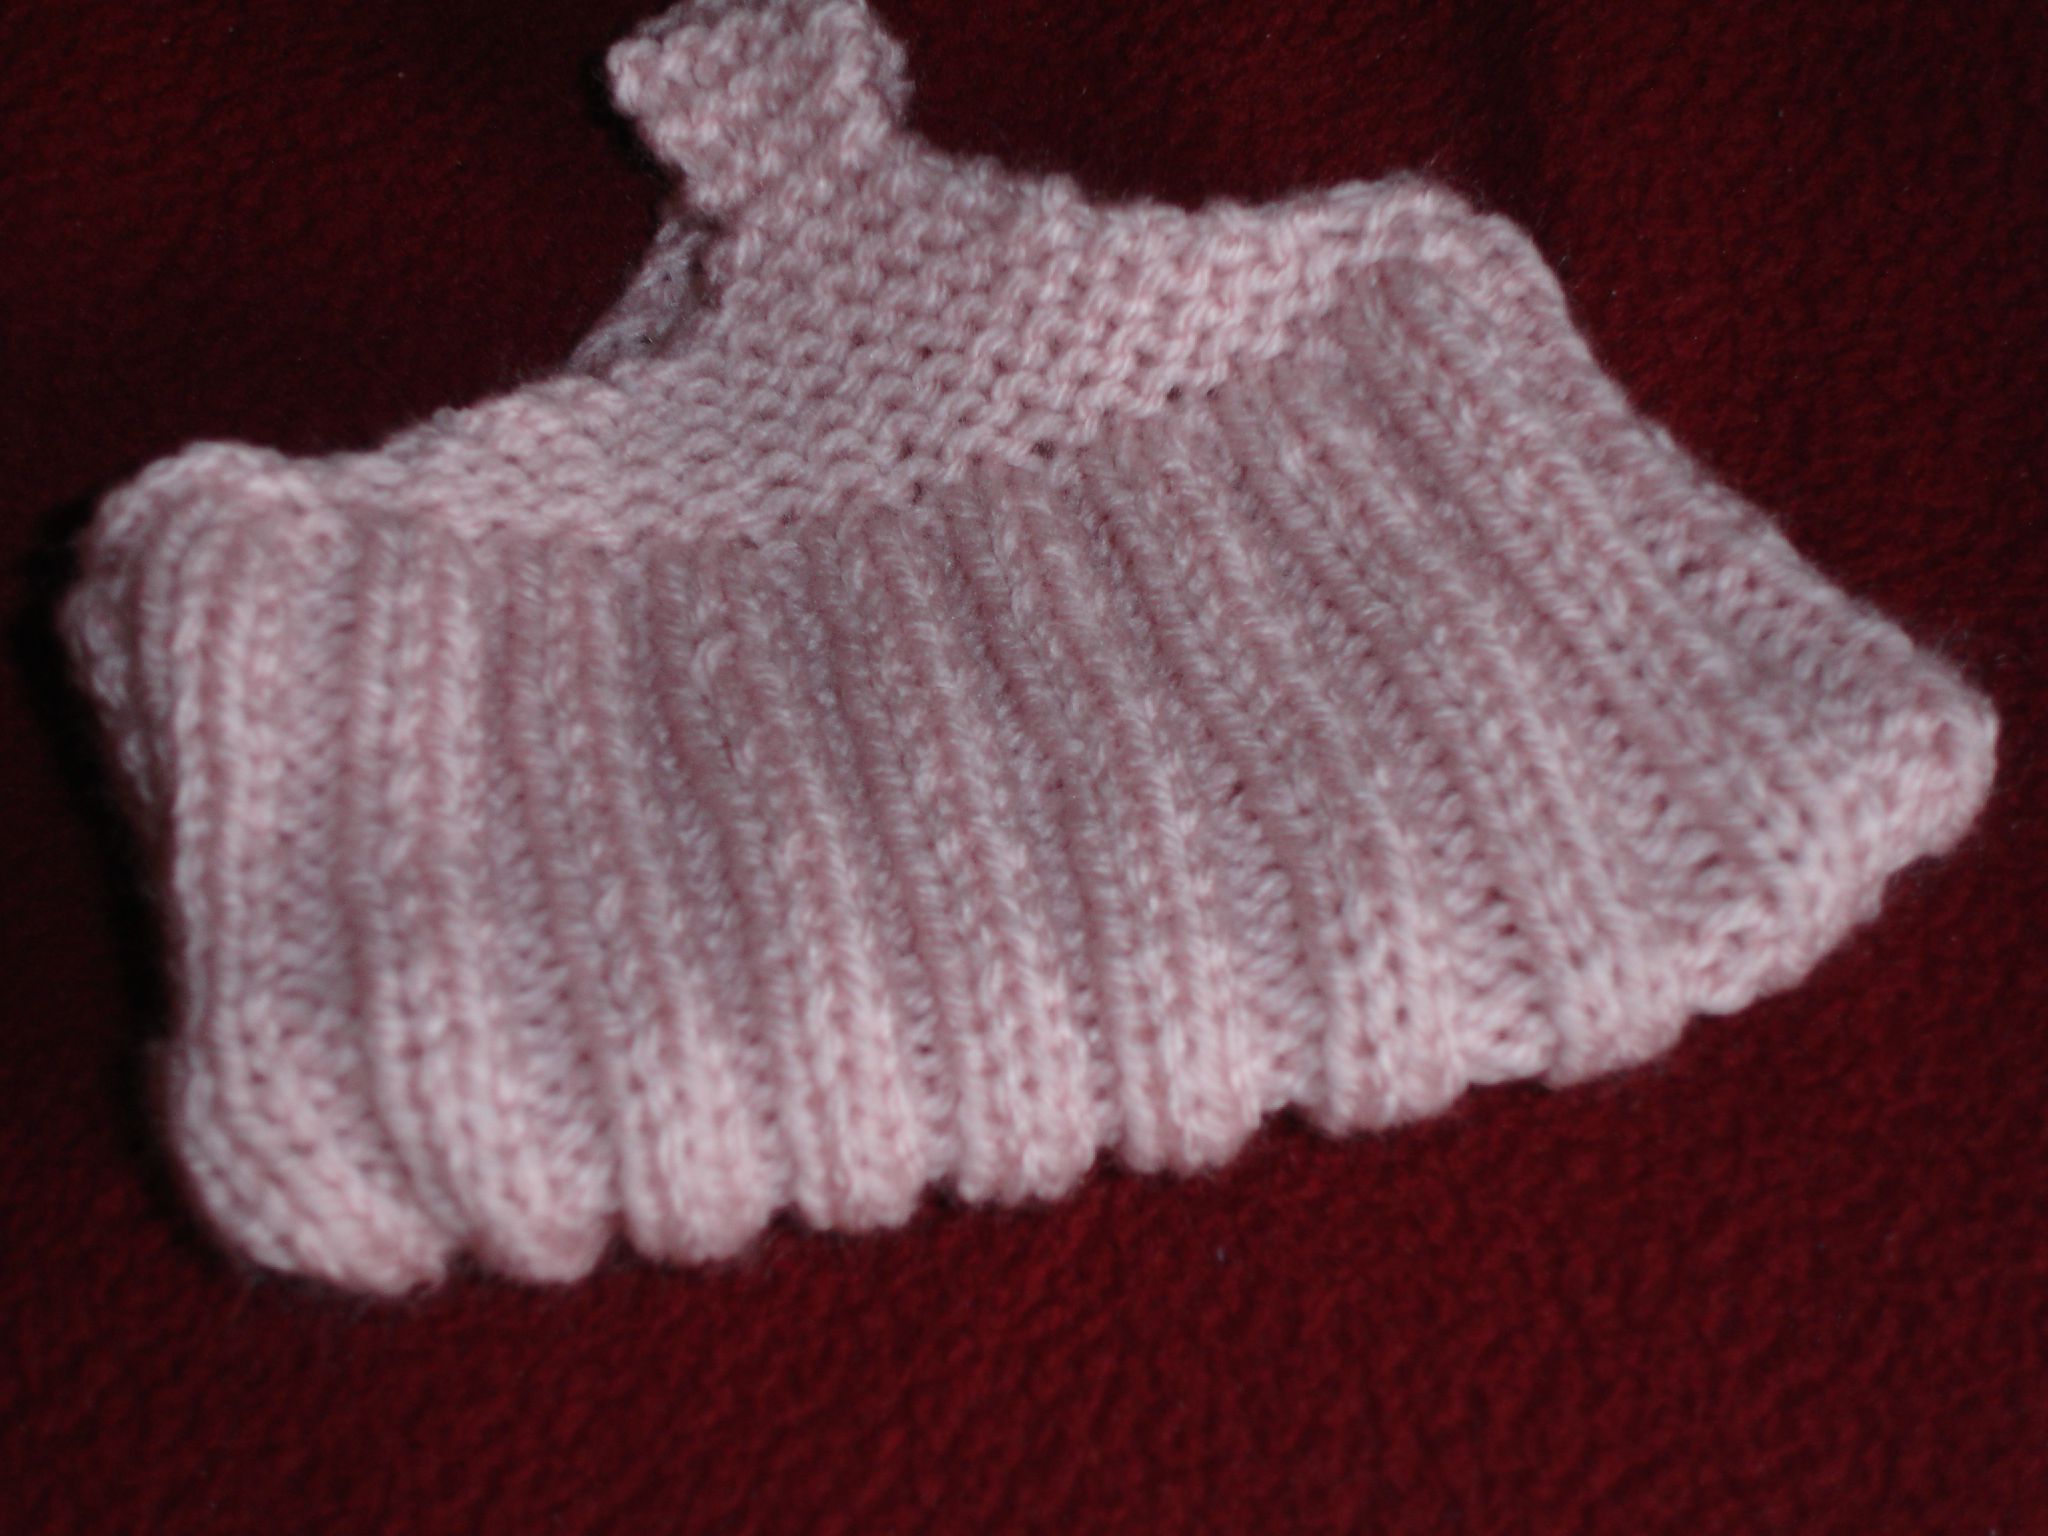 apprendre a tricoter des chaussons adultes